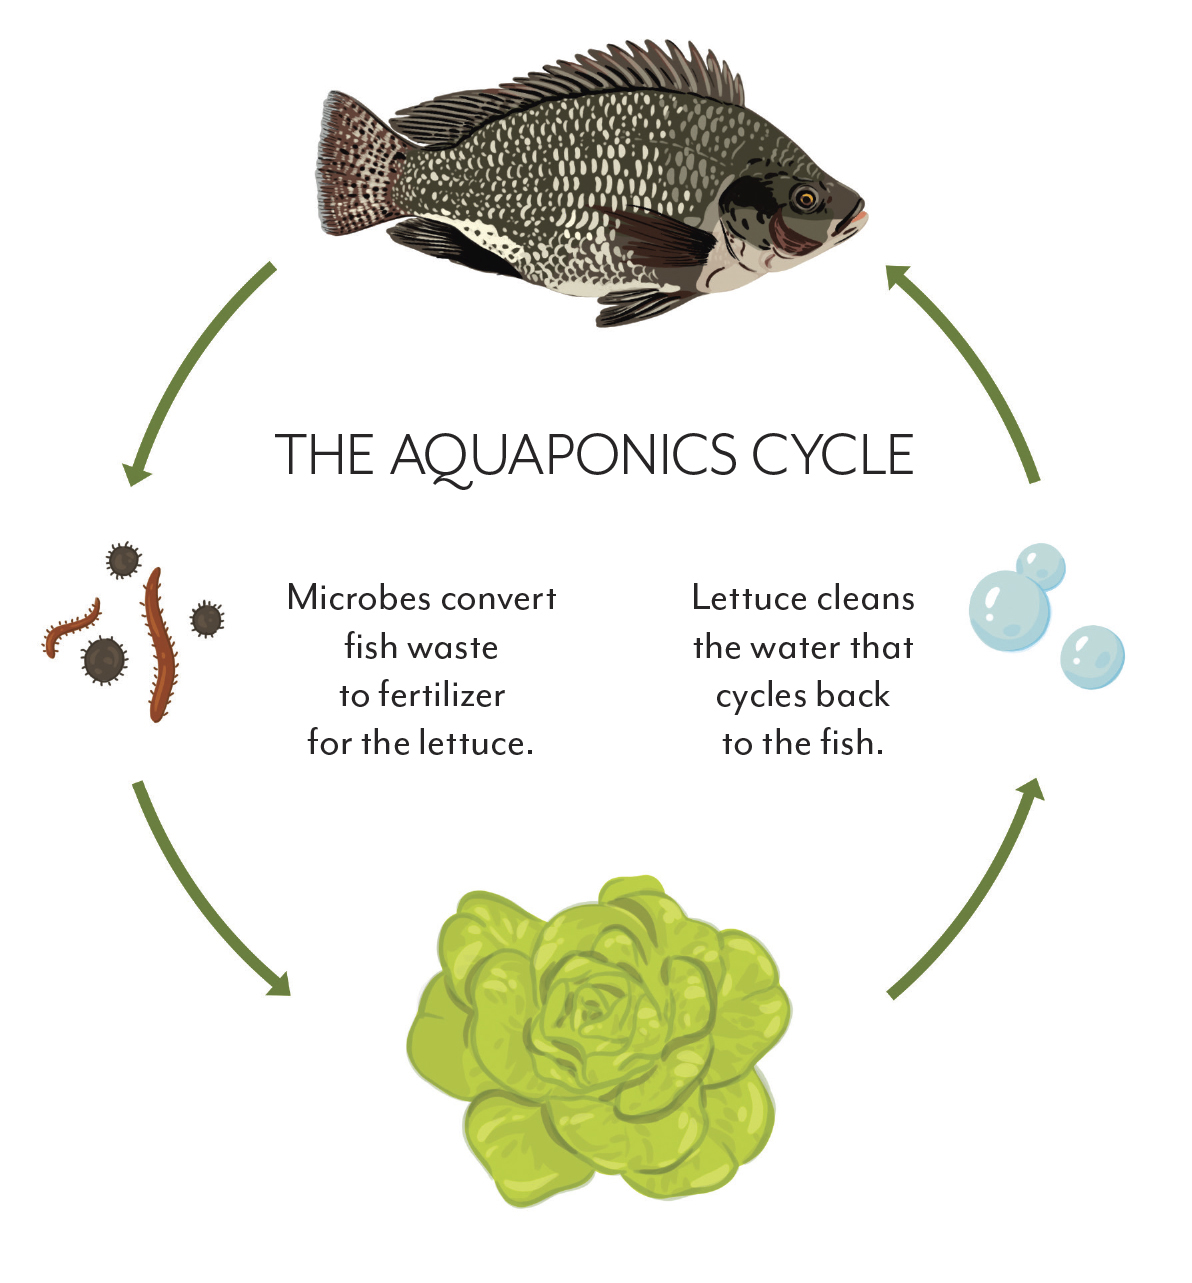 Aquaponics cycle illustration